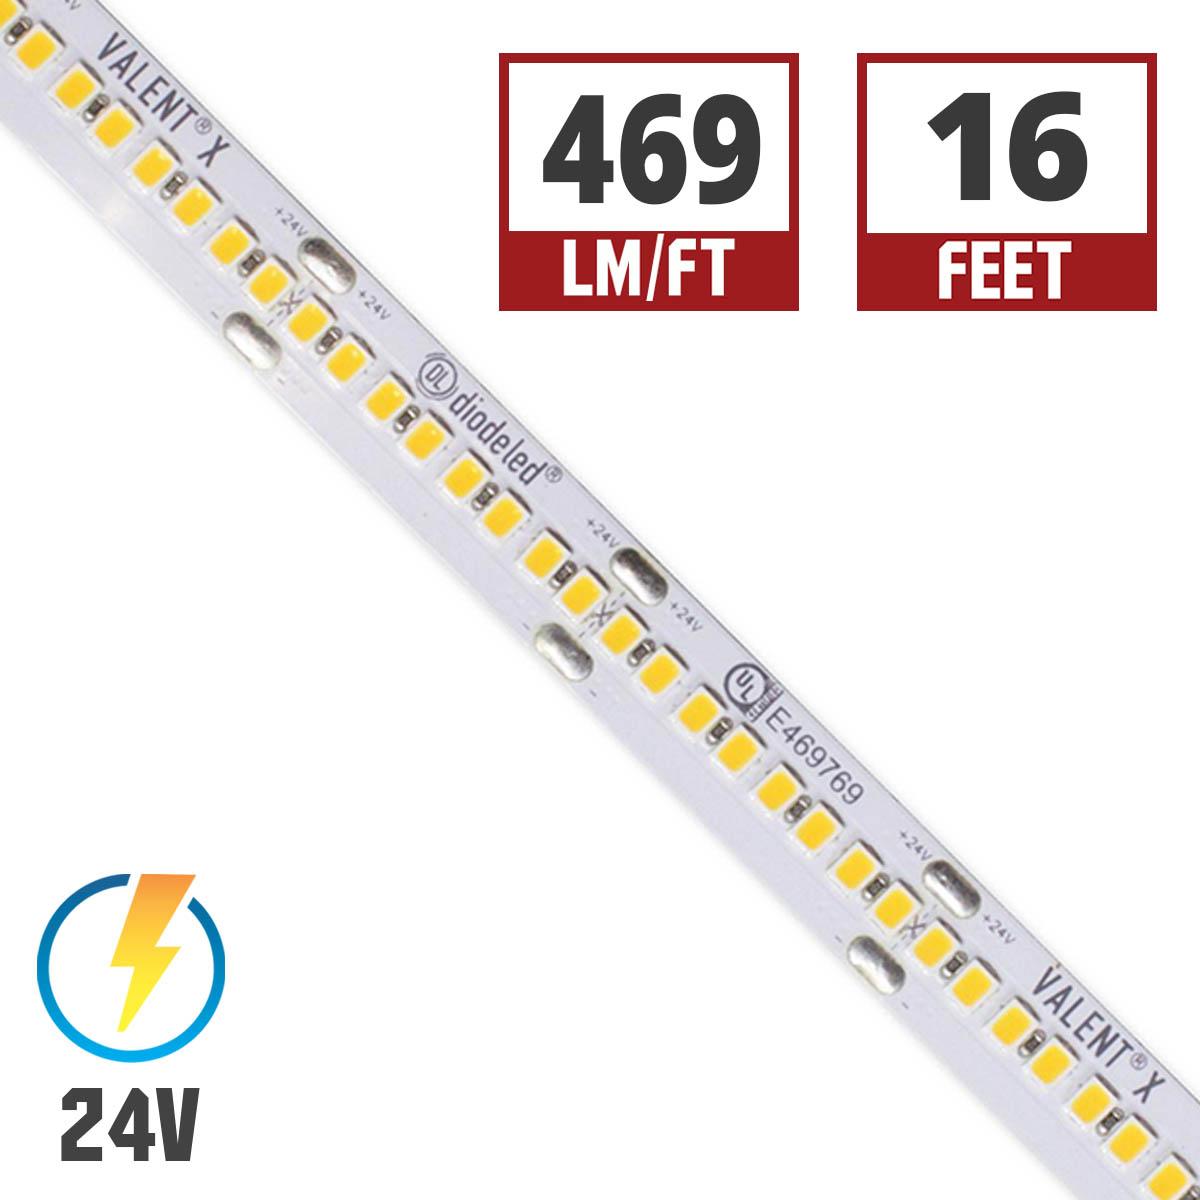 Valent X High Density LED Strip Light, 16ft Reel, 24V